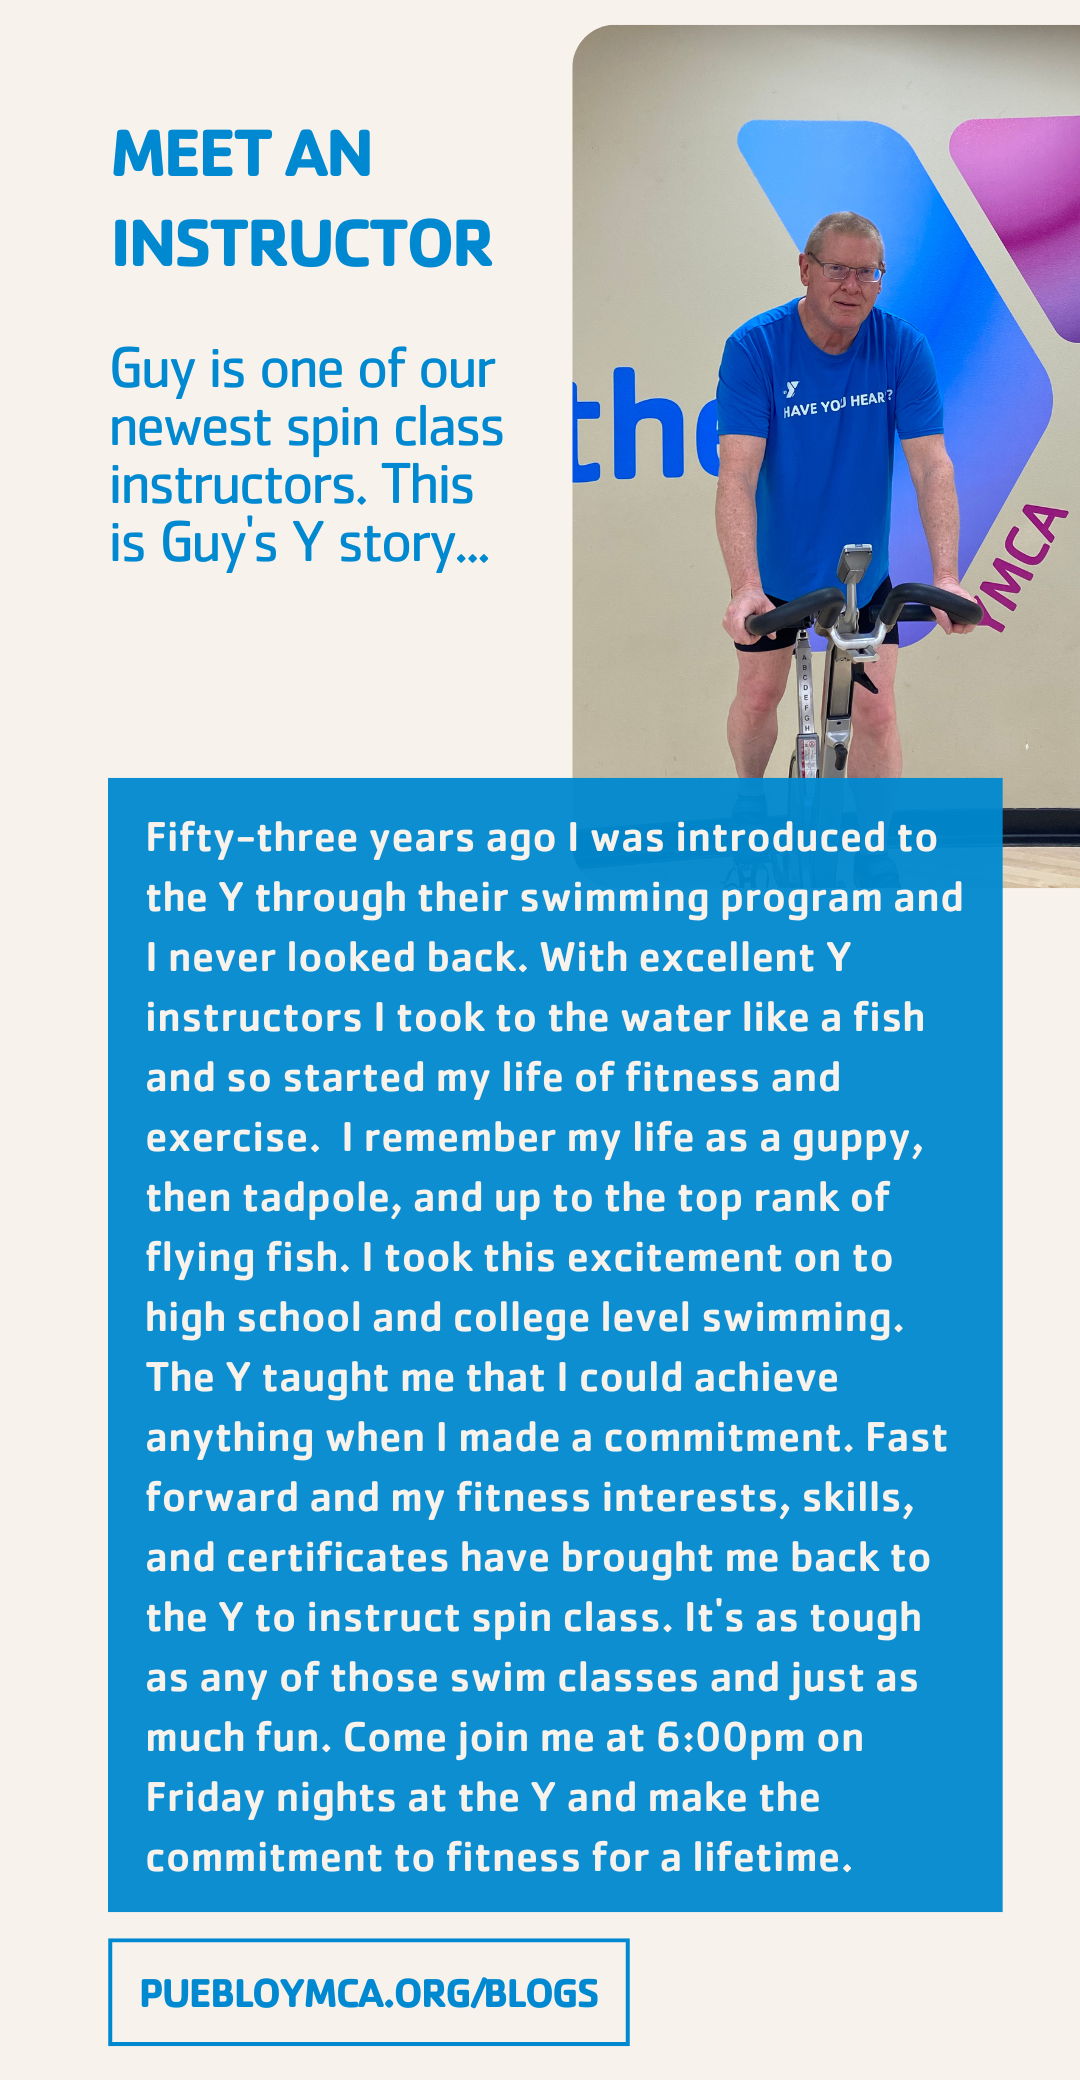 Meet an Instructor: Guy